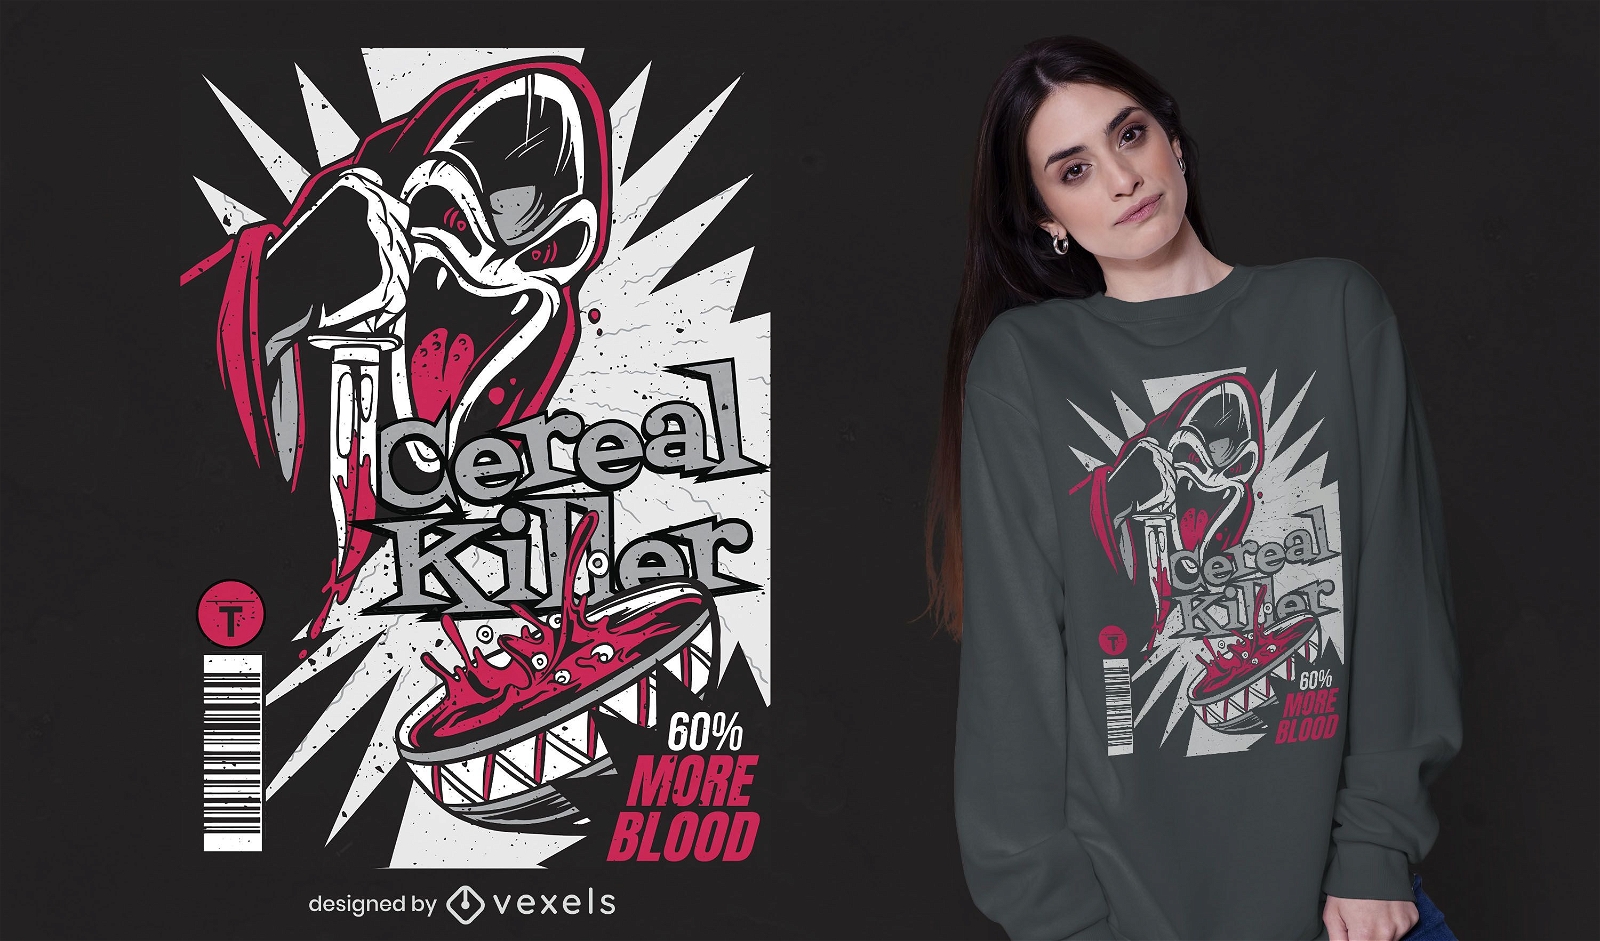 Cereal killer t-shirt design